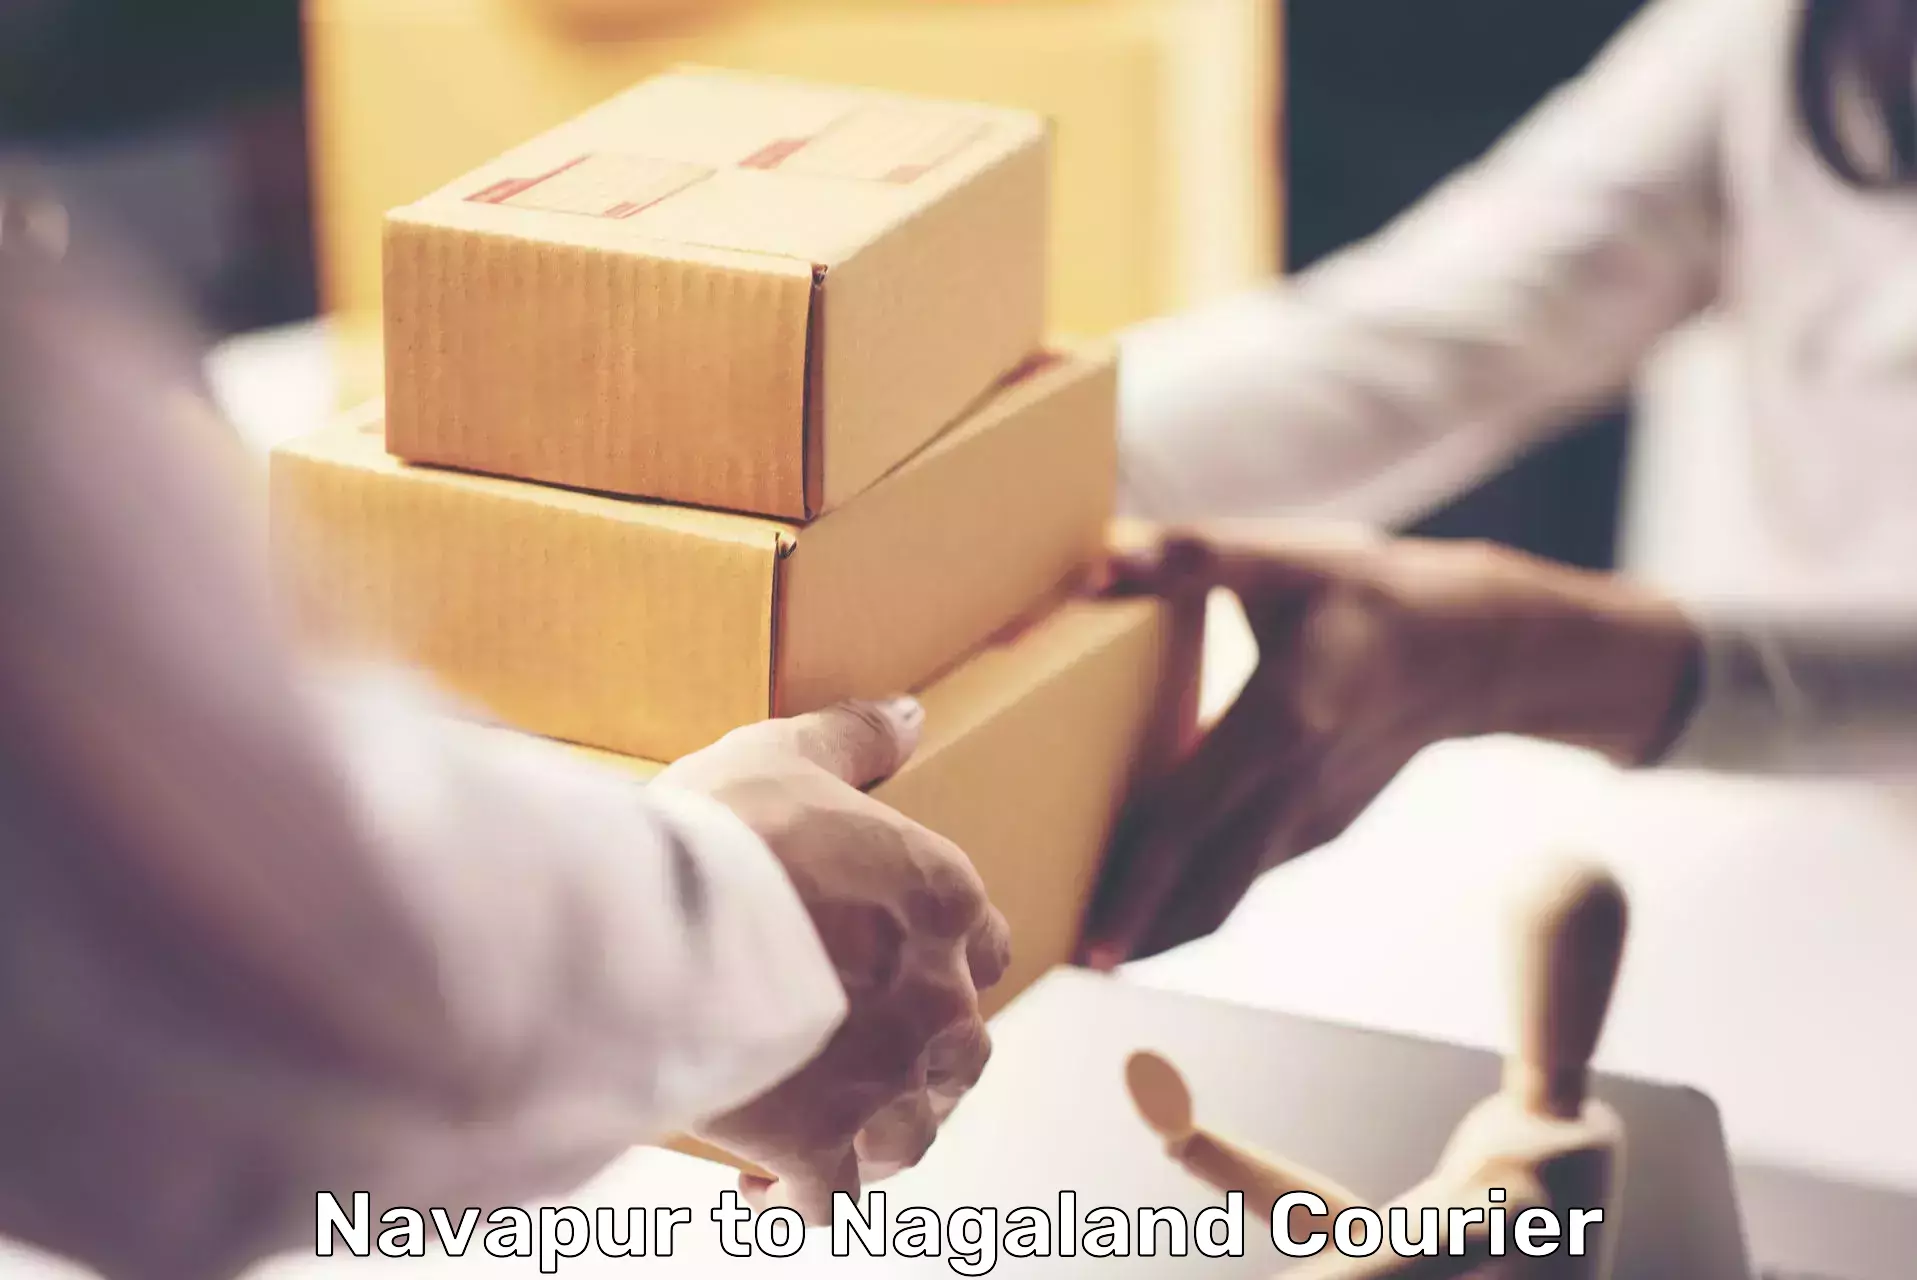 Efficient parcel service Navapur to Nagaland